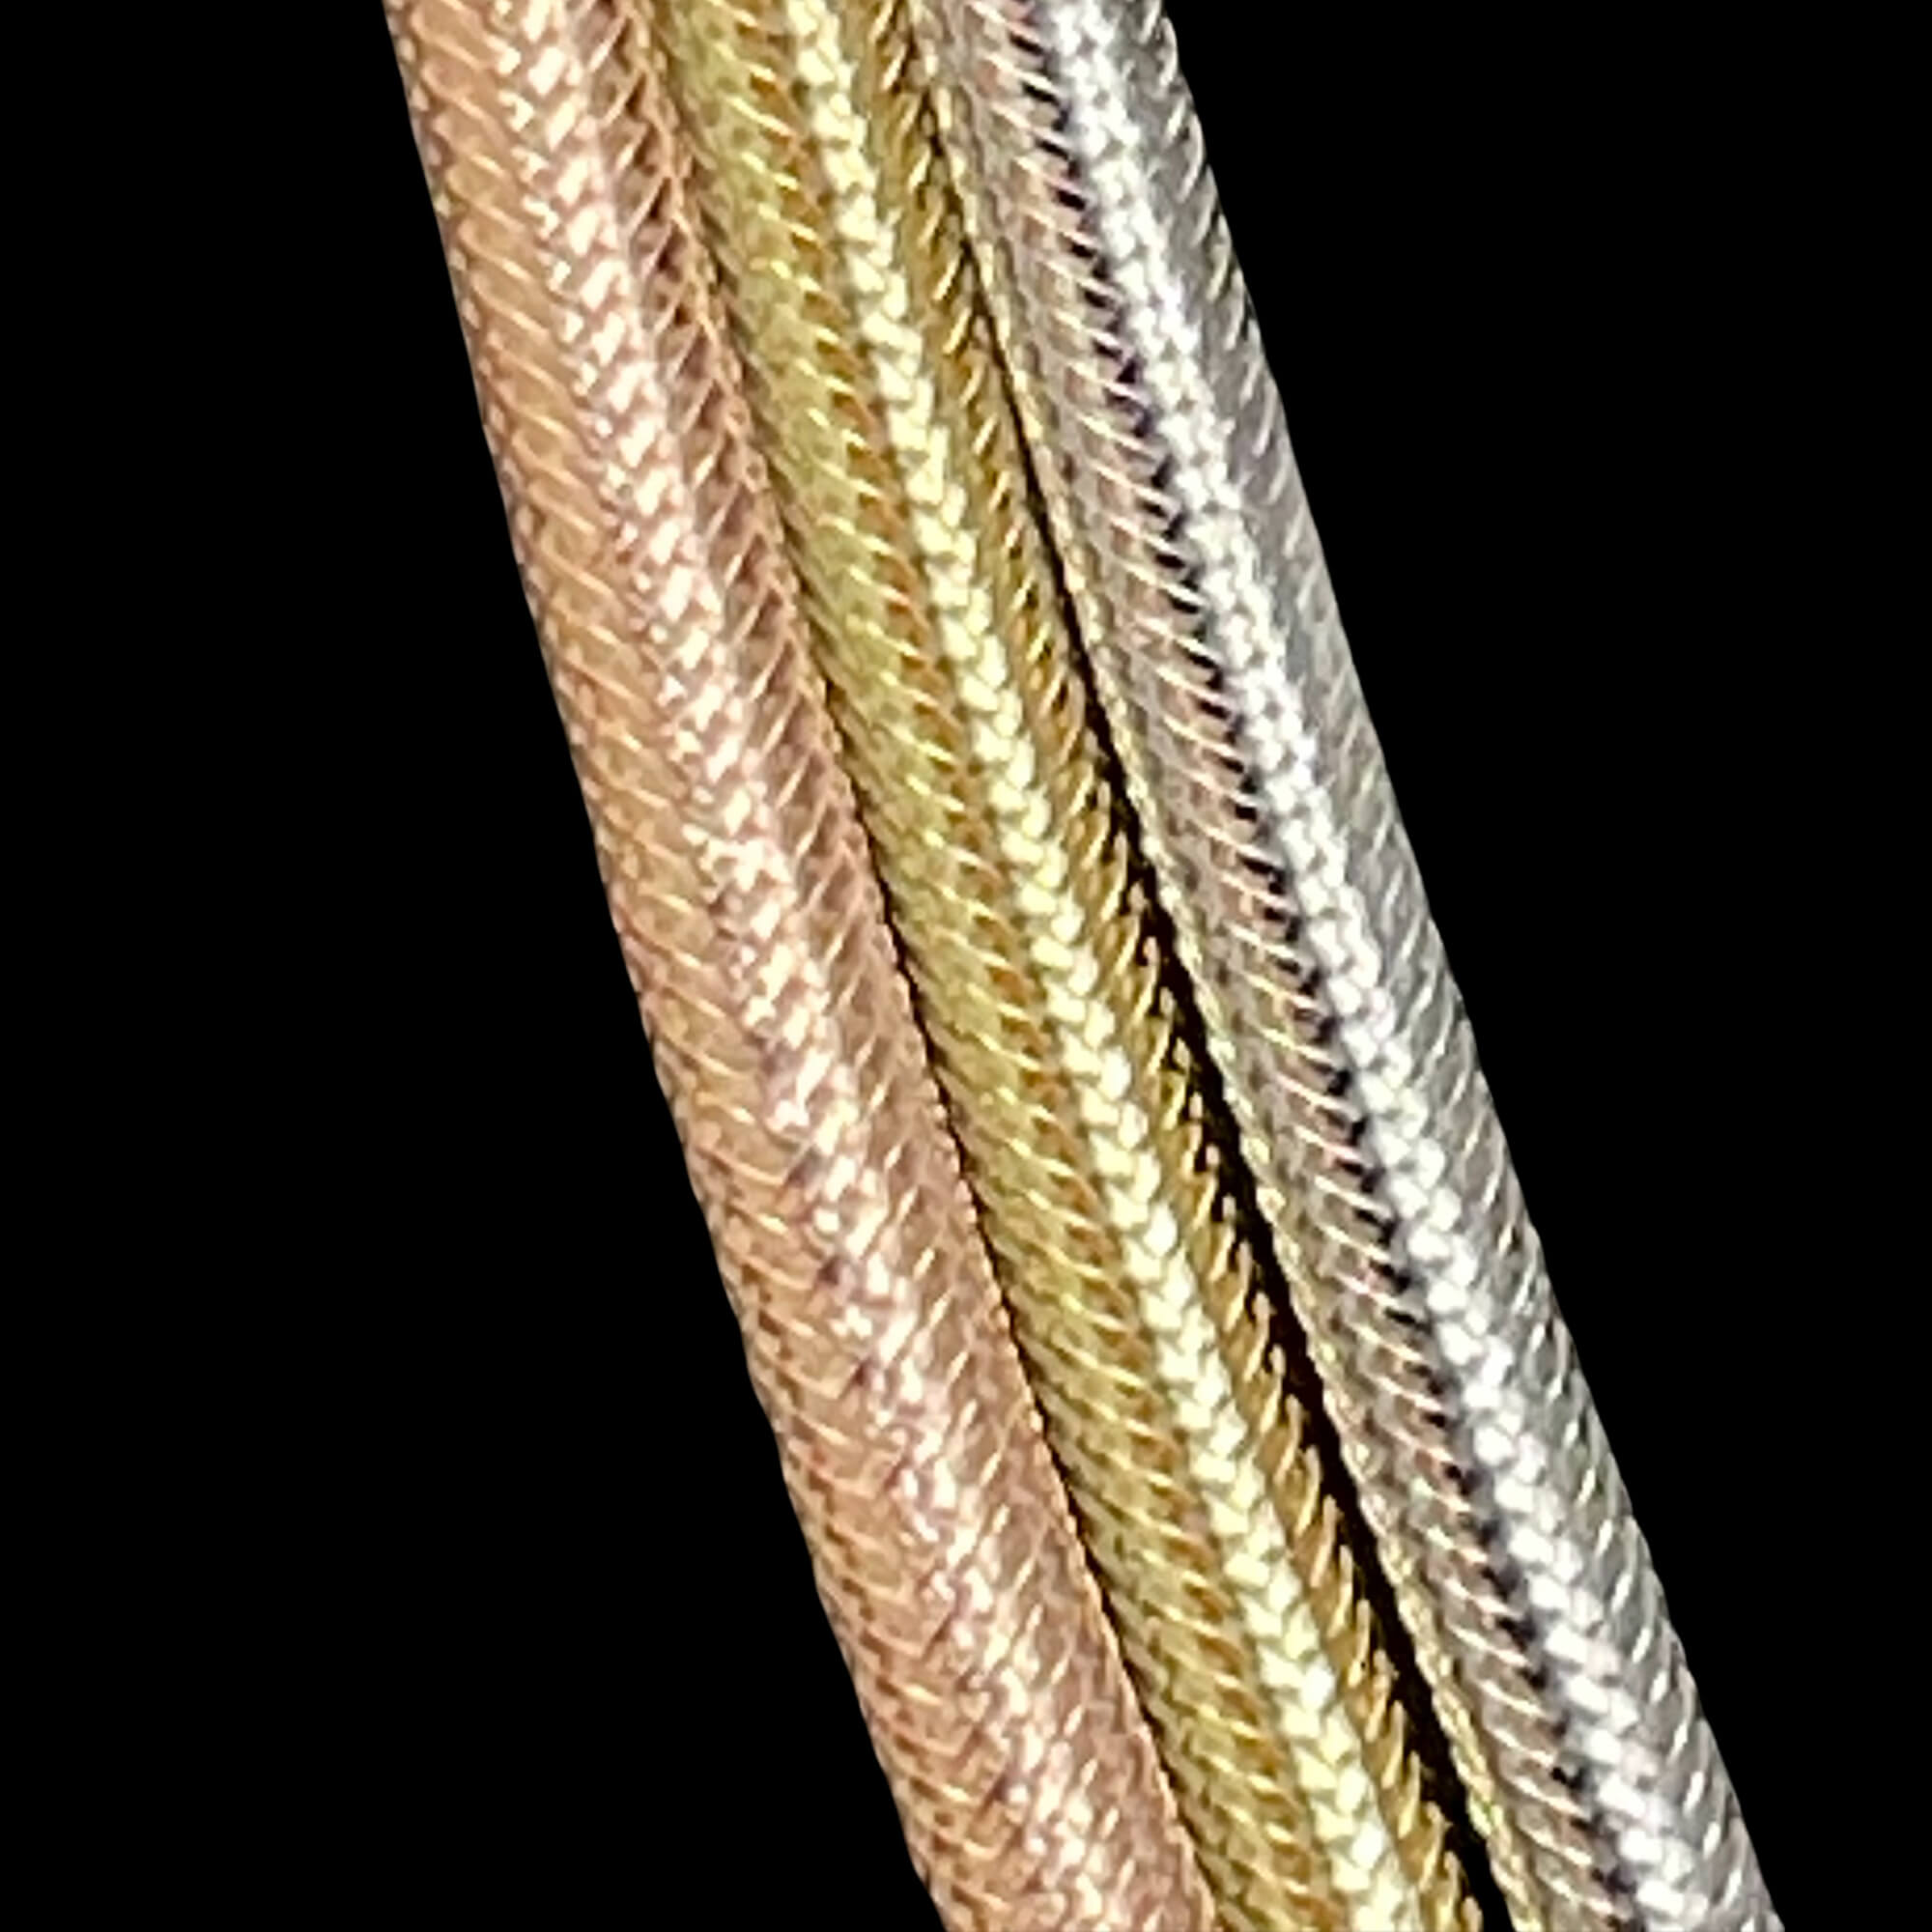 Chaîne oméga à trois rangs composée de 3 couleurs d'or 18 carats et de silicone